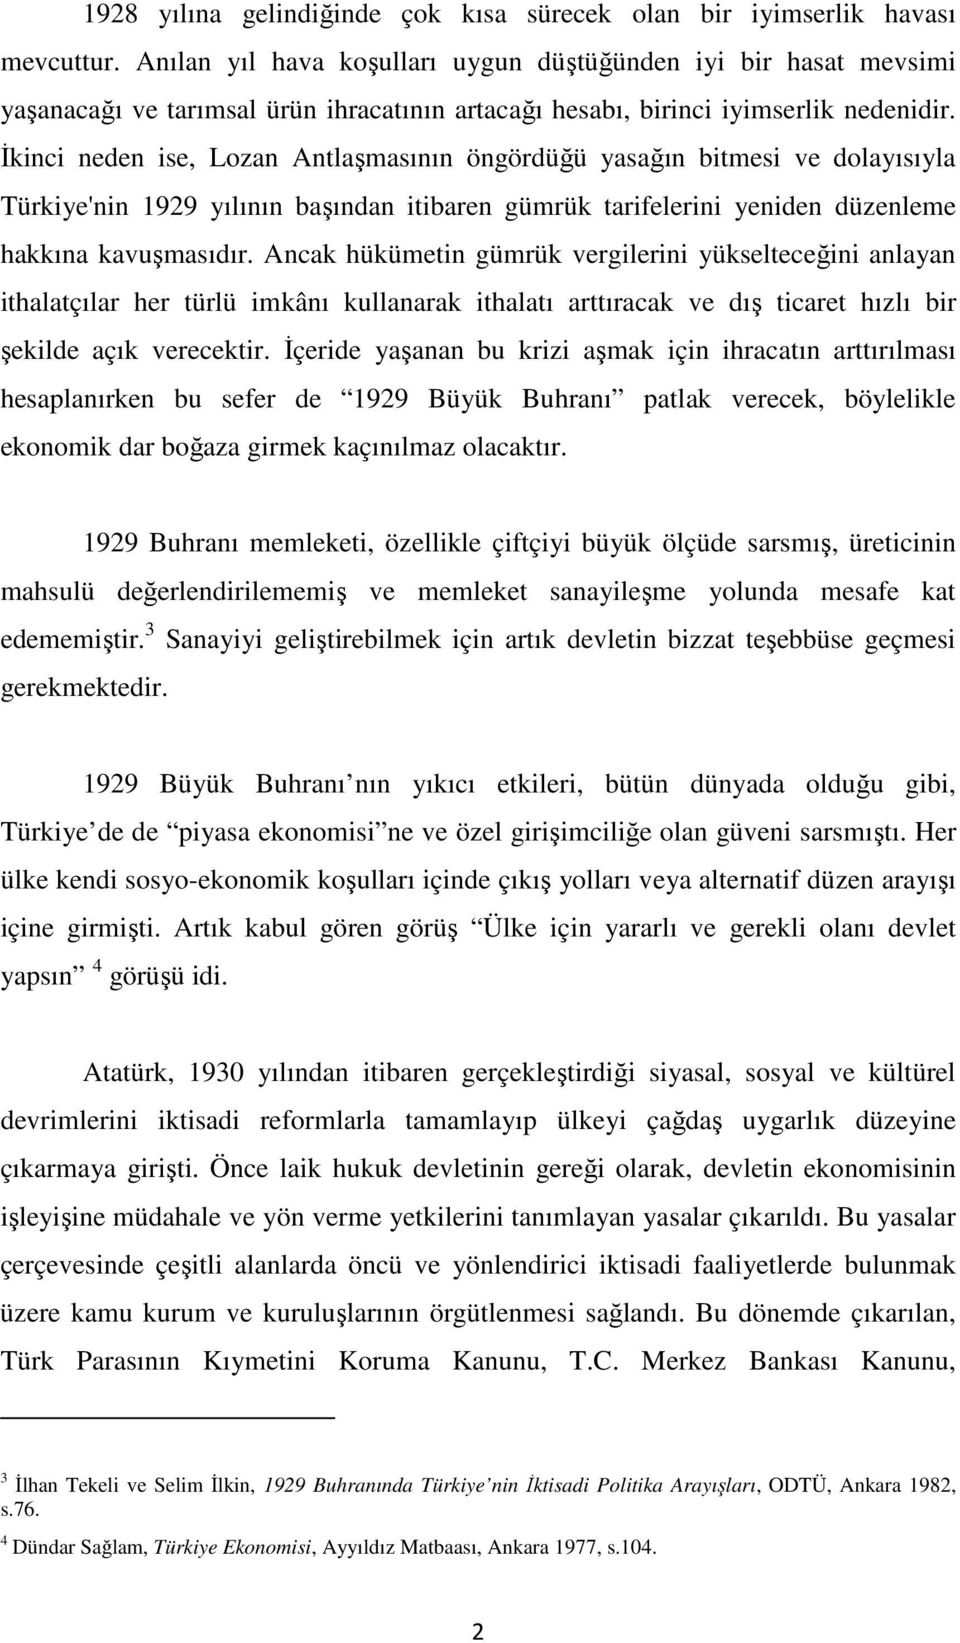 İkinci neden ise, Lozan Antlaşmasının öngördüğü yasağın bitmesi ve dolayısıyla Türkiye'nin 1929 yılının başından itibaren gümrük tarifelerini yeniden düzenleme hakkına kavuşmasıdır.